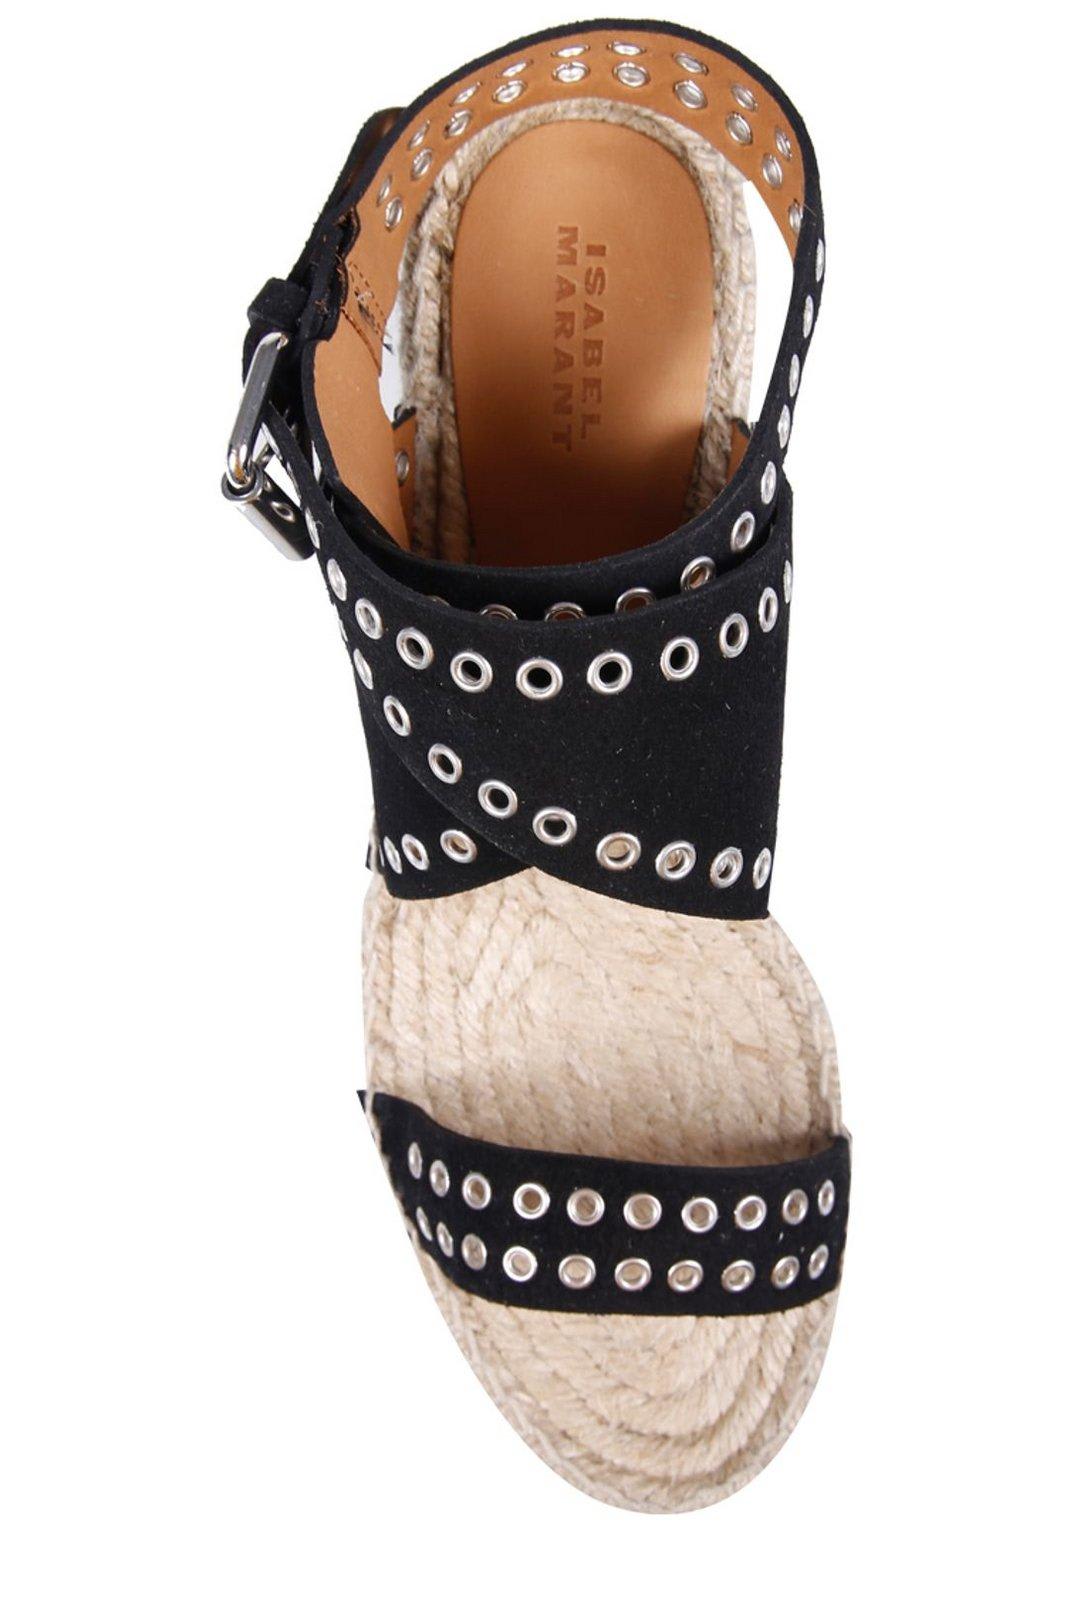 Shop Isabel Marant Open Toe Platform Wedge Sandals In Black